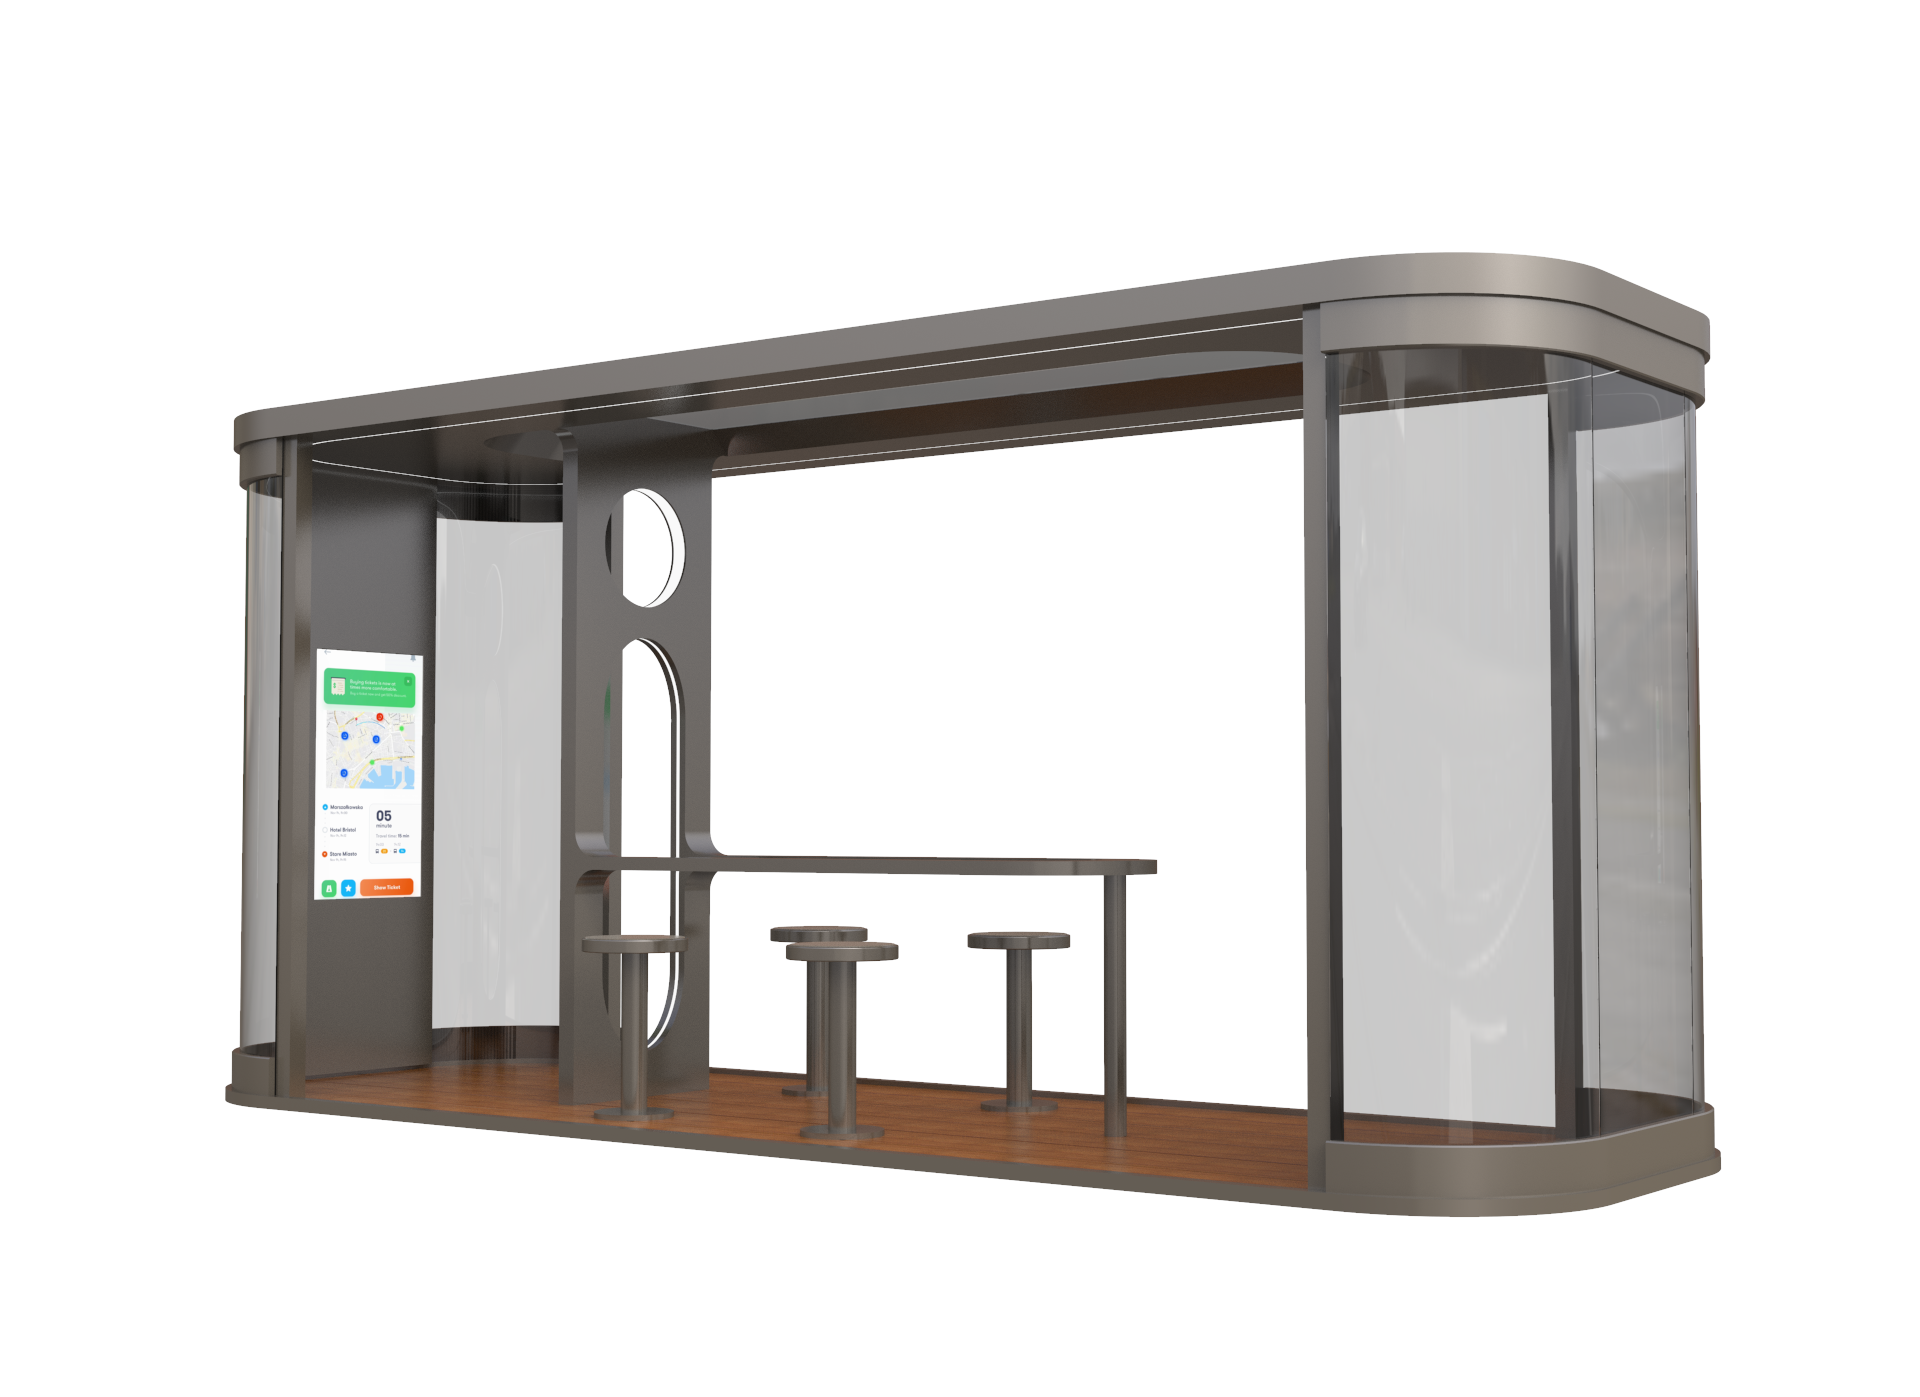 modern bus shelter